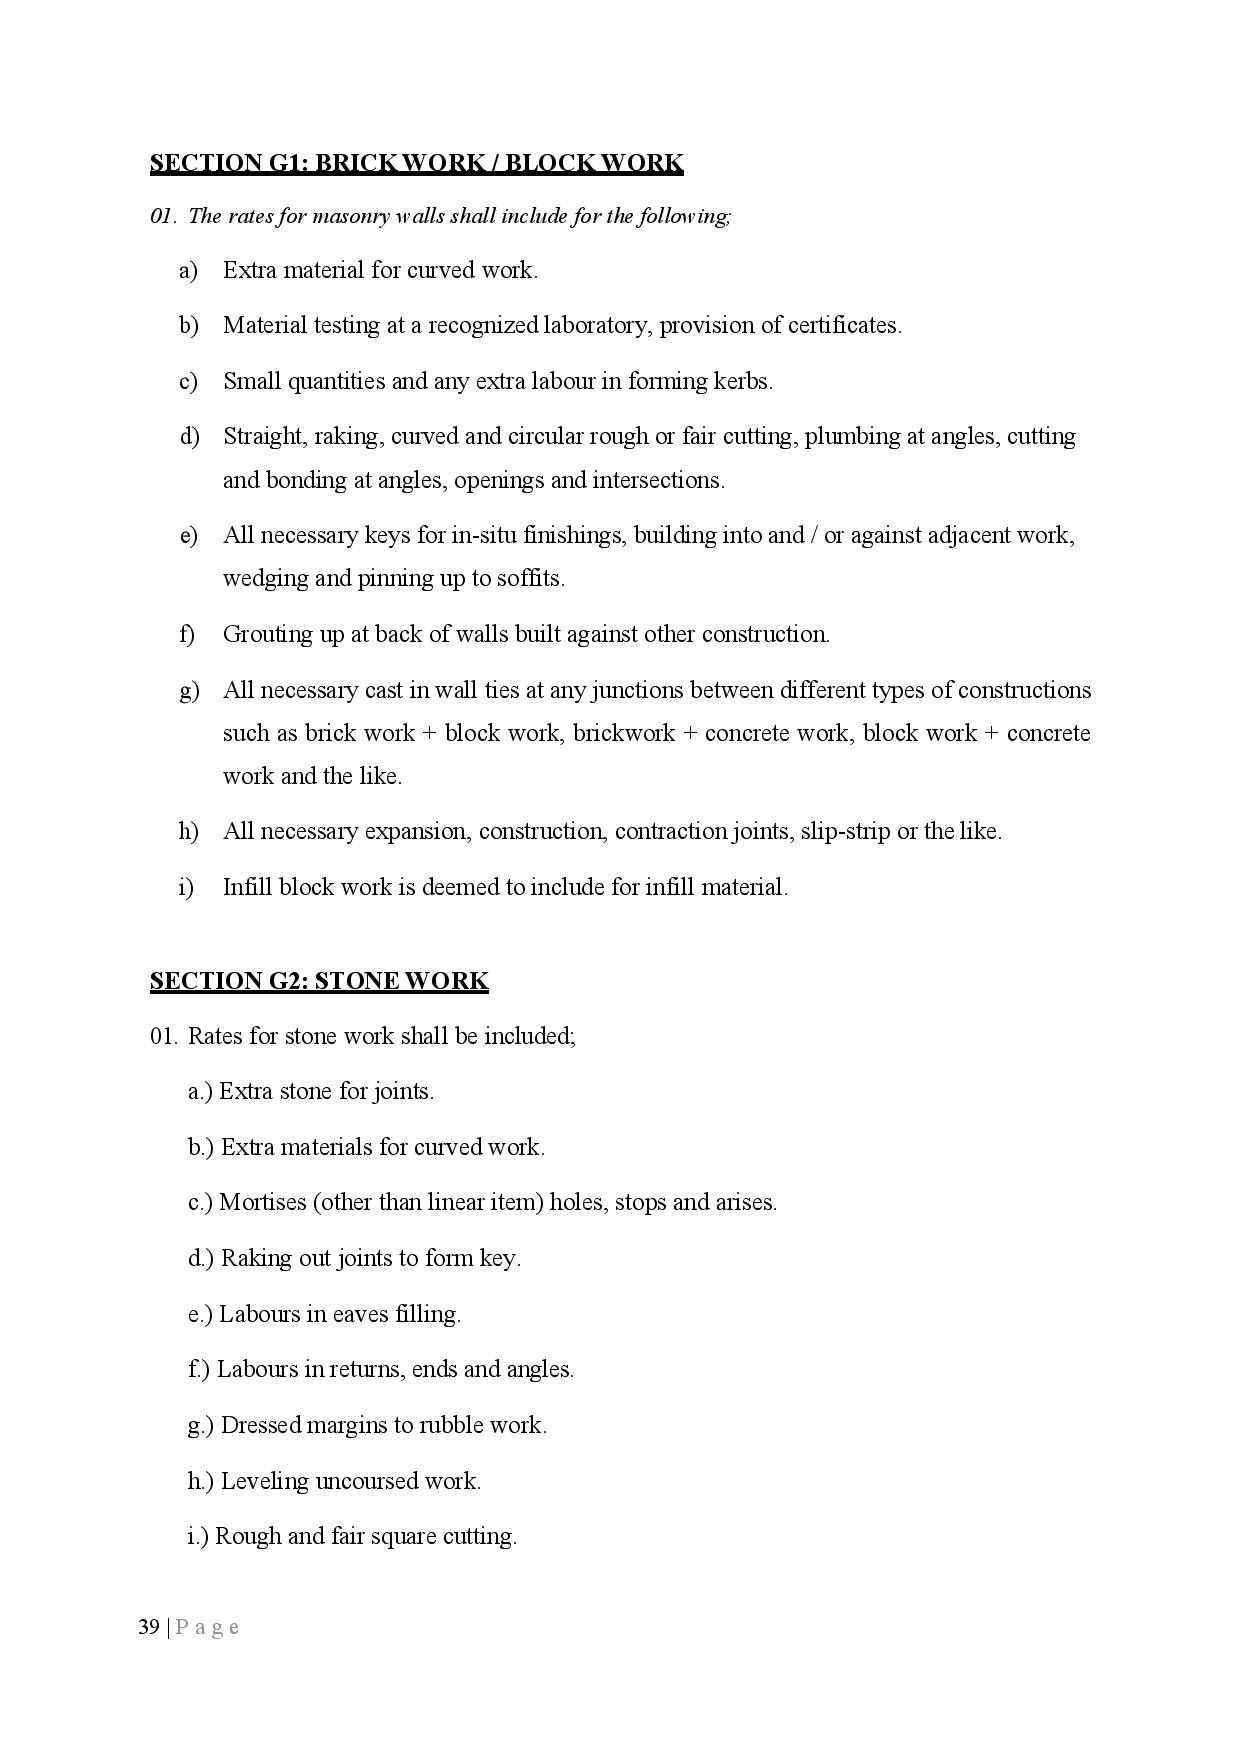 Preamble page 016